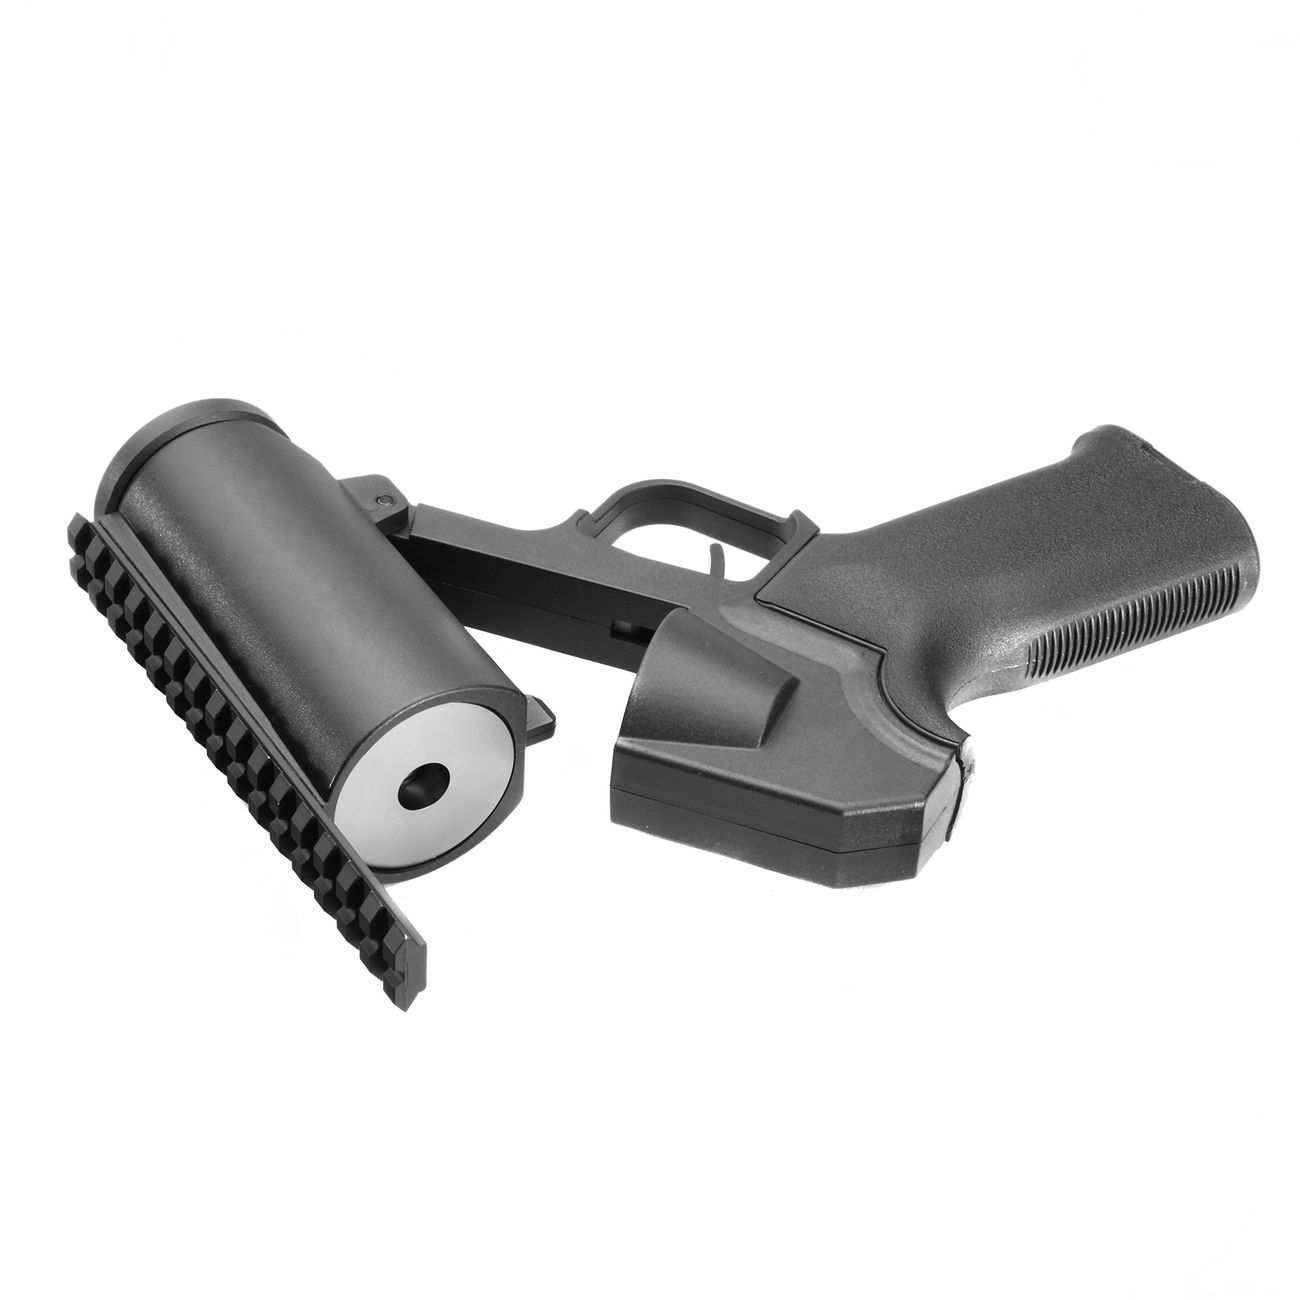 6mmProShop 40mm Airsoft Pocket Pistolen-Launcher Shorty schwarz Bild 1